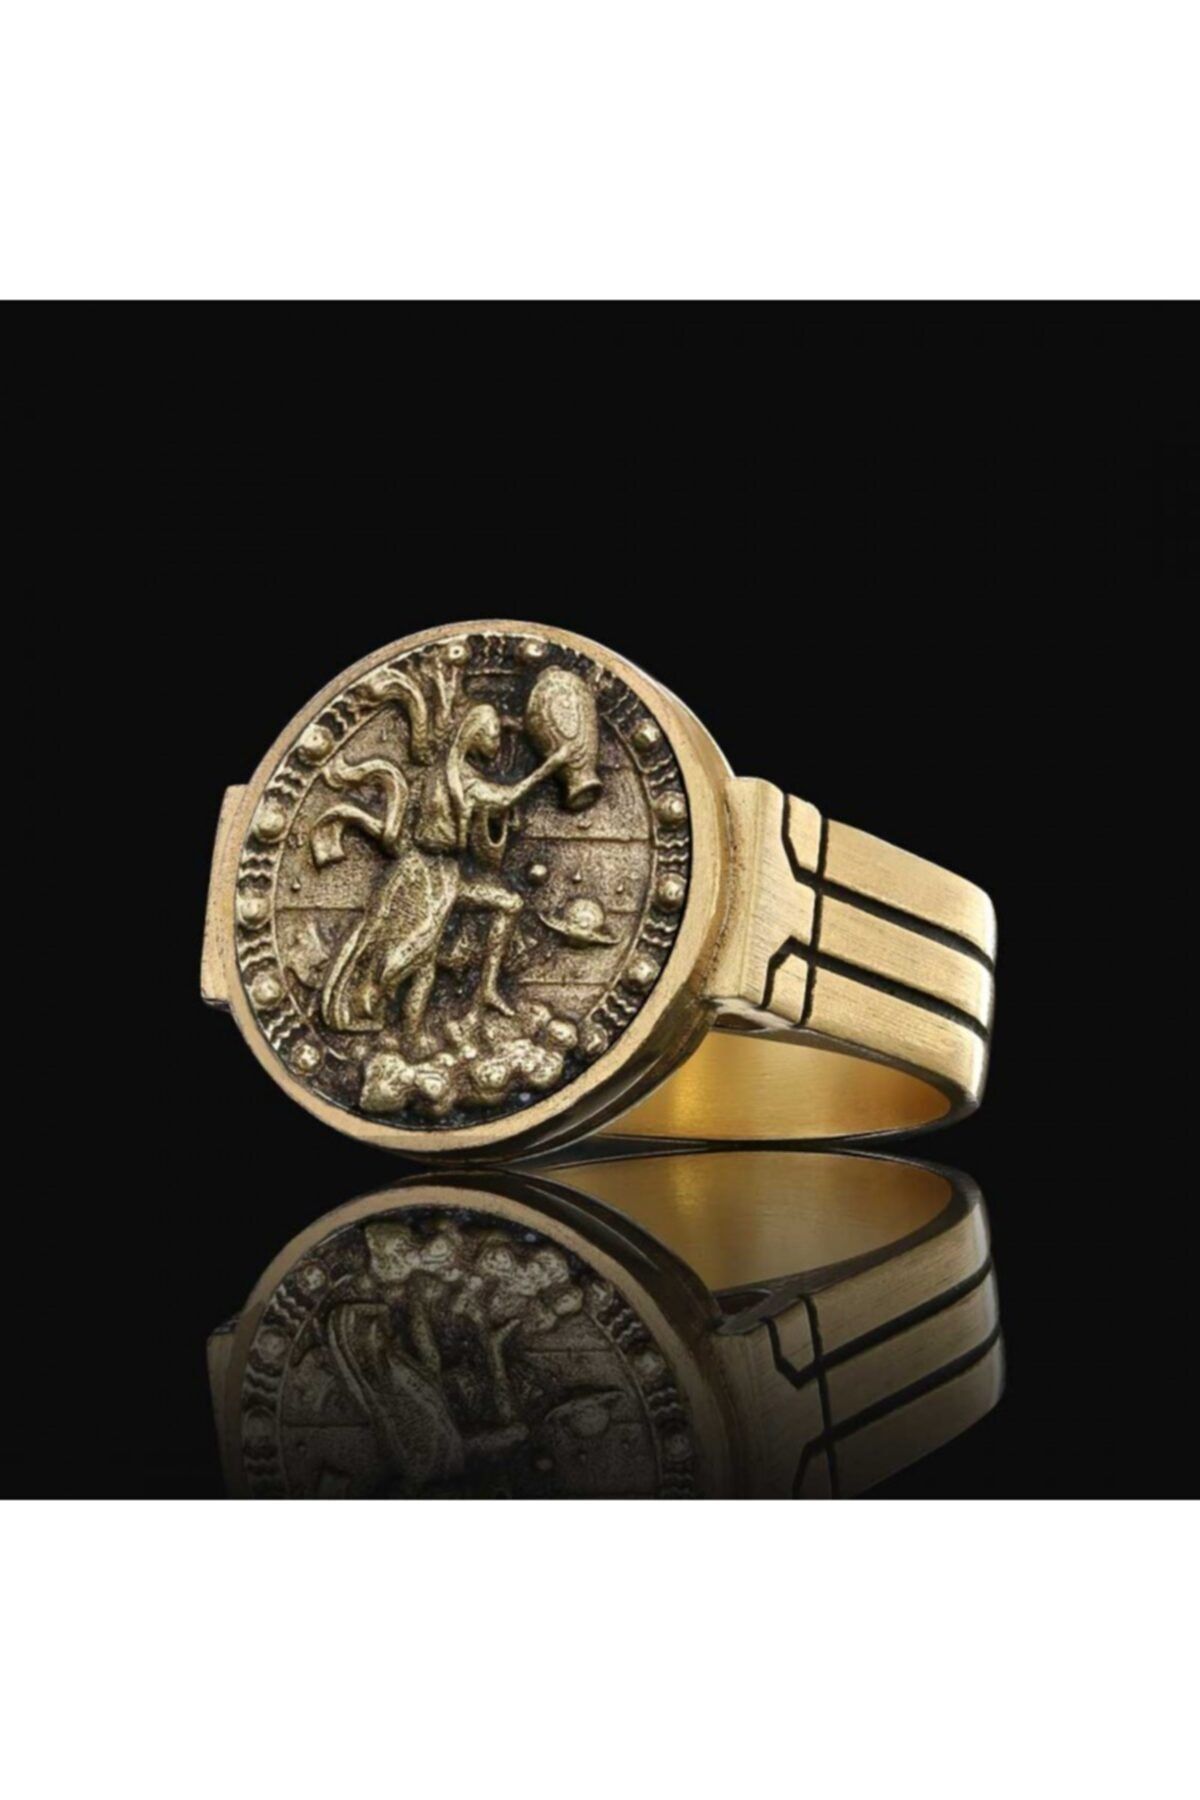 ELMAS İŞ Kova Burcu Tasarım 925 Ayar Gümüş Üzeri Altın Kaplama Koleksiyon Yüzük